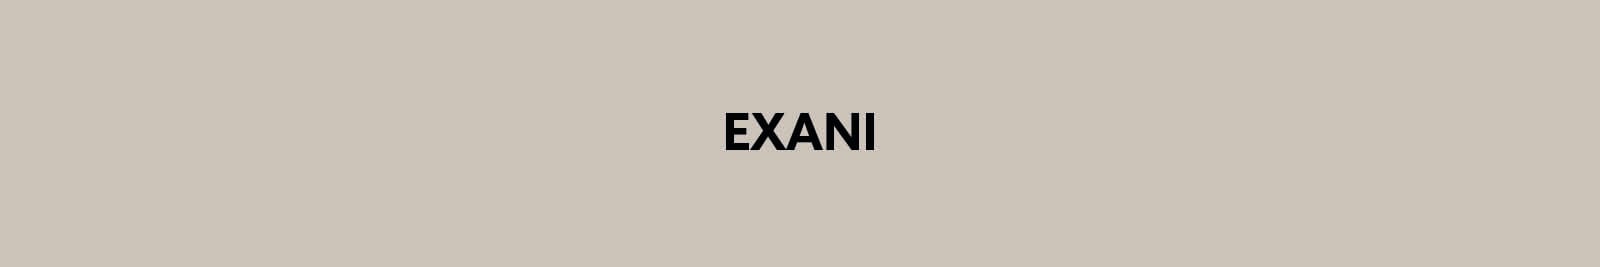 Exani